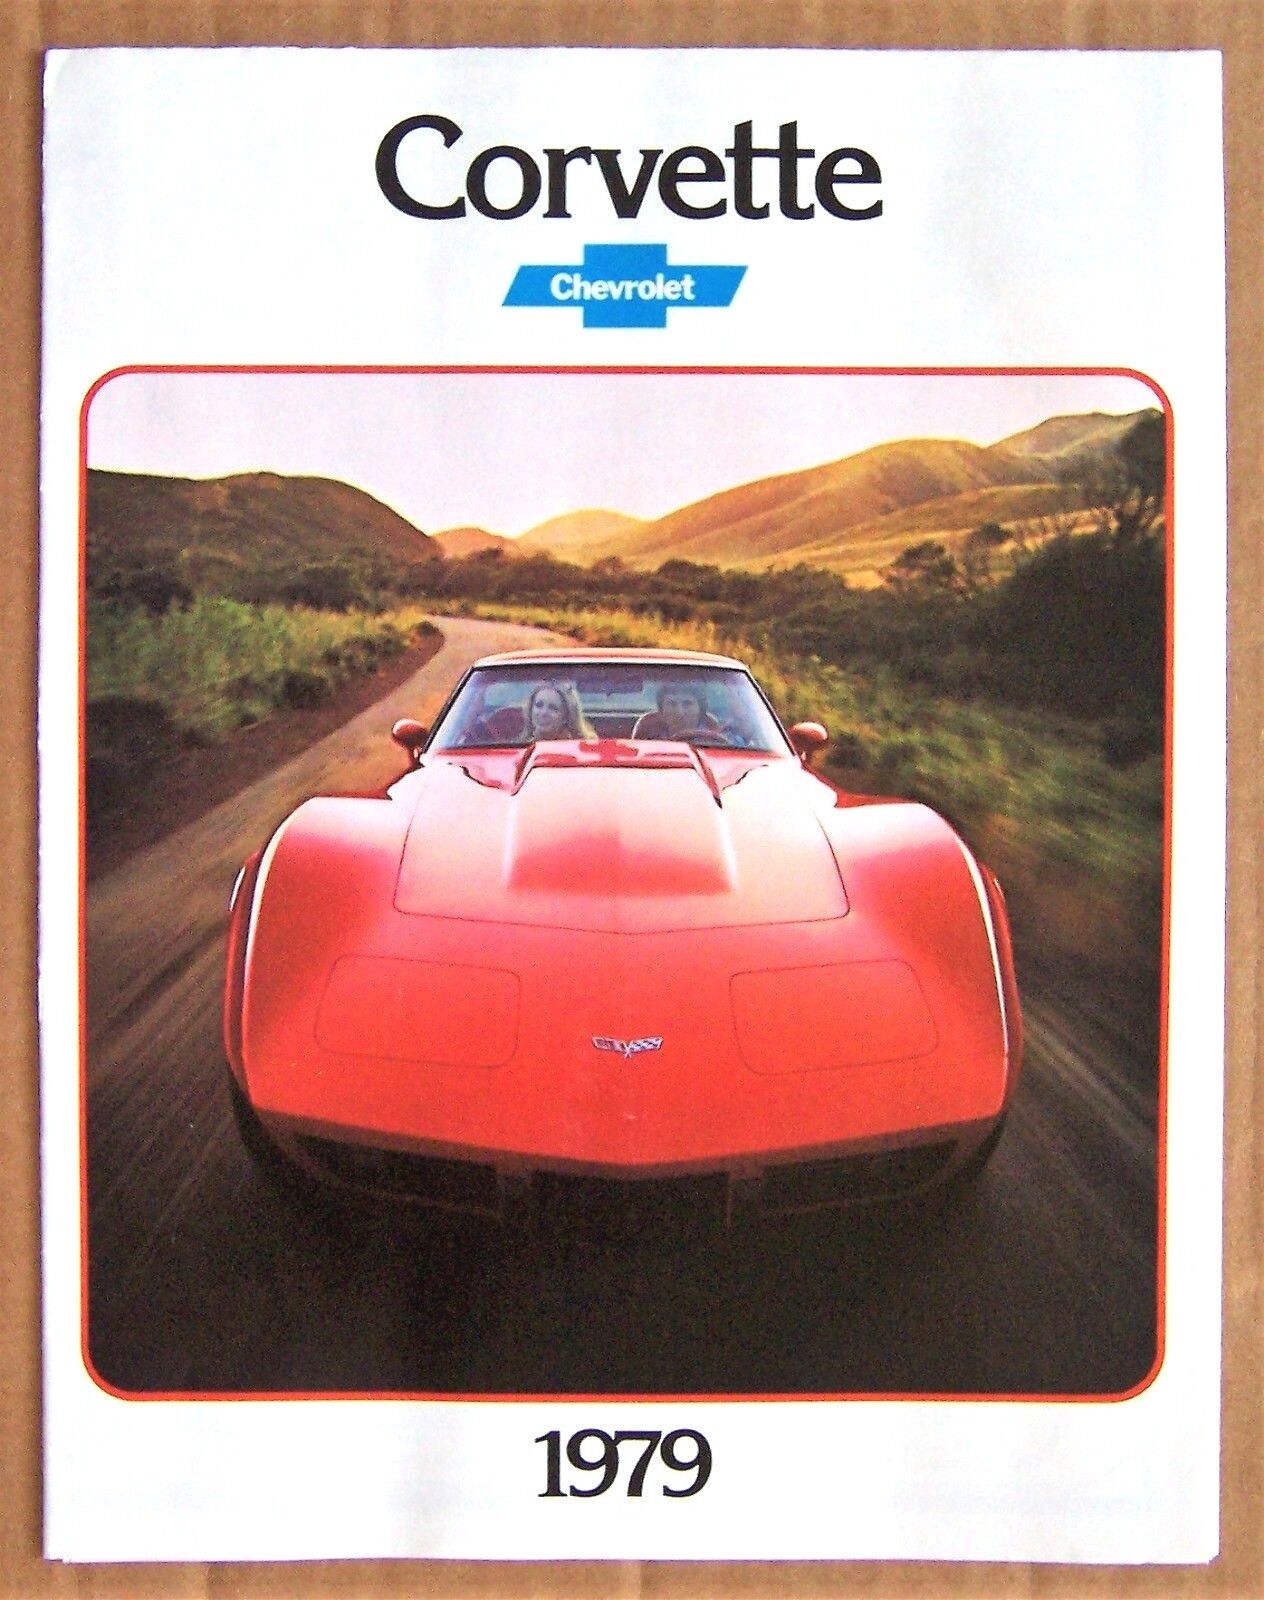 Cover Art for the 1979 Corvette Sales Brochure.